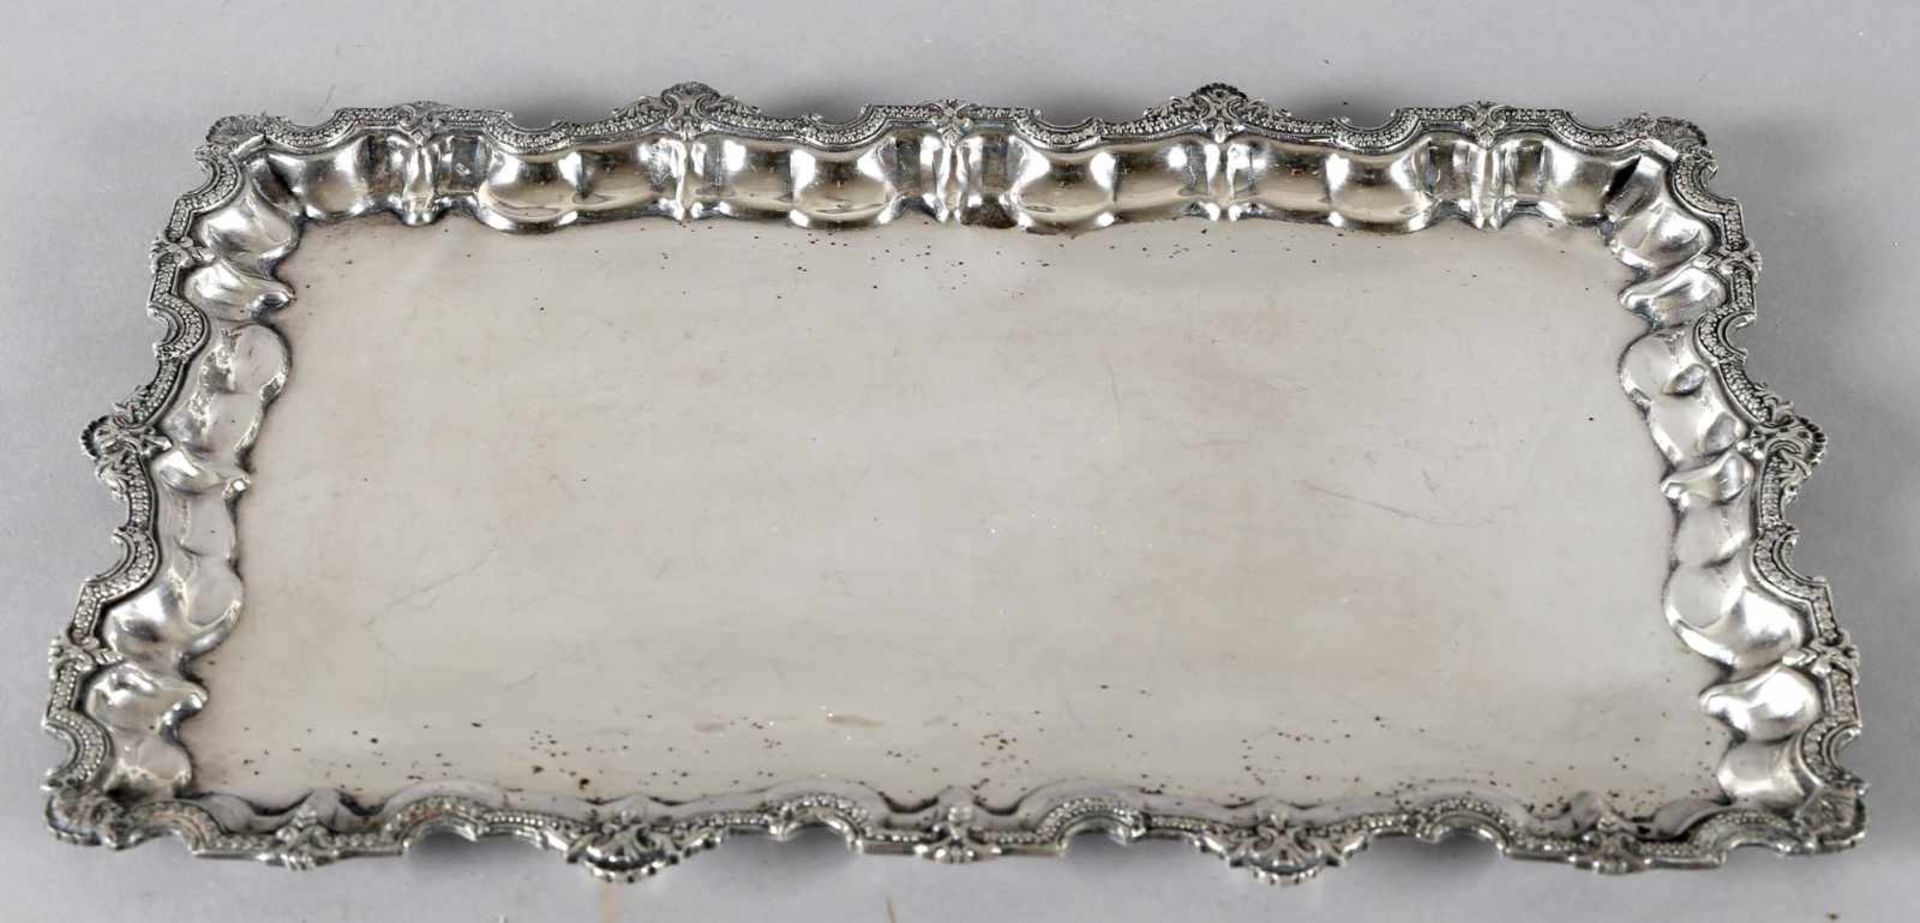 Asiatisches Silbertablett mit dekorativem Profilrand, Mitte 20. Jh.rechteckig, 37,5 x 25 cm, ca. 850